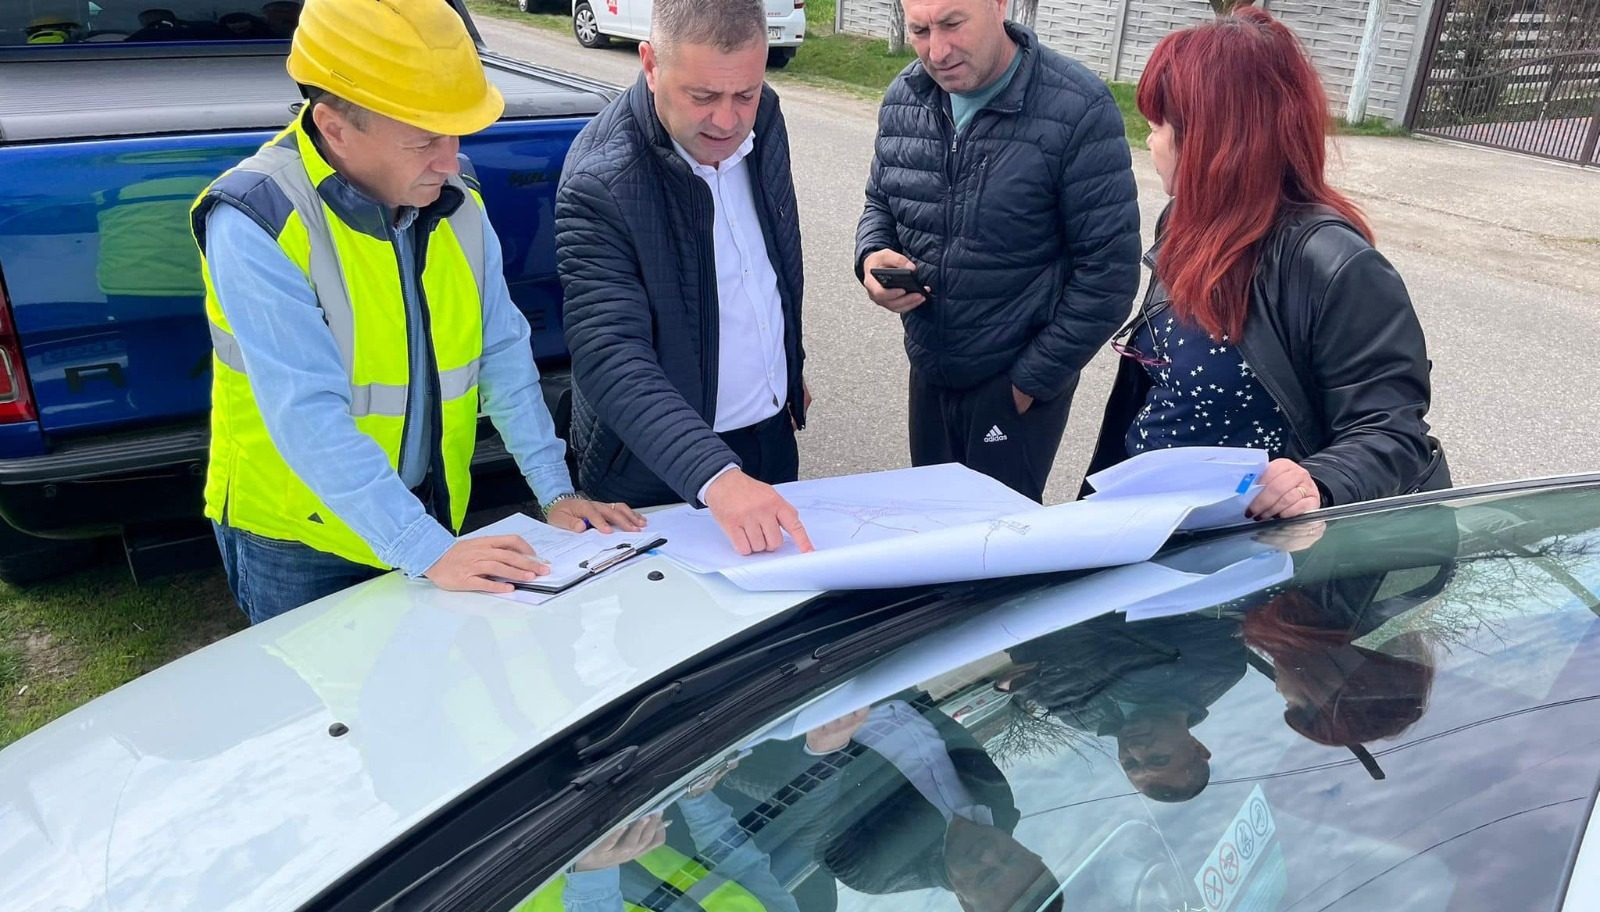 Olt Primarul comunei Scornicești a anunțat începerea unui nou proiect de dezvoltare locală axat pe extinderea rețelei de gaze naturale în întreaga localitate